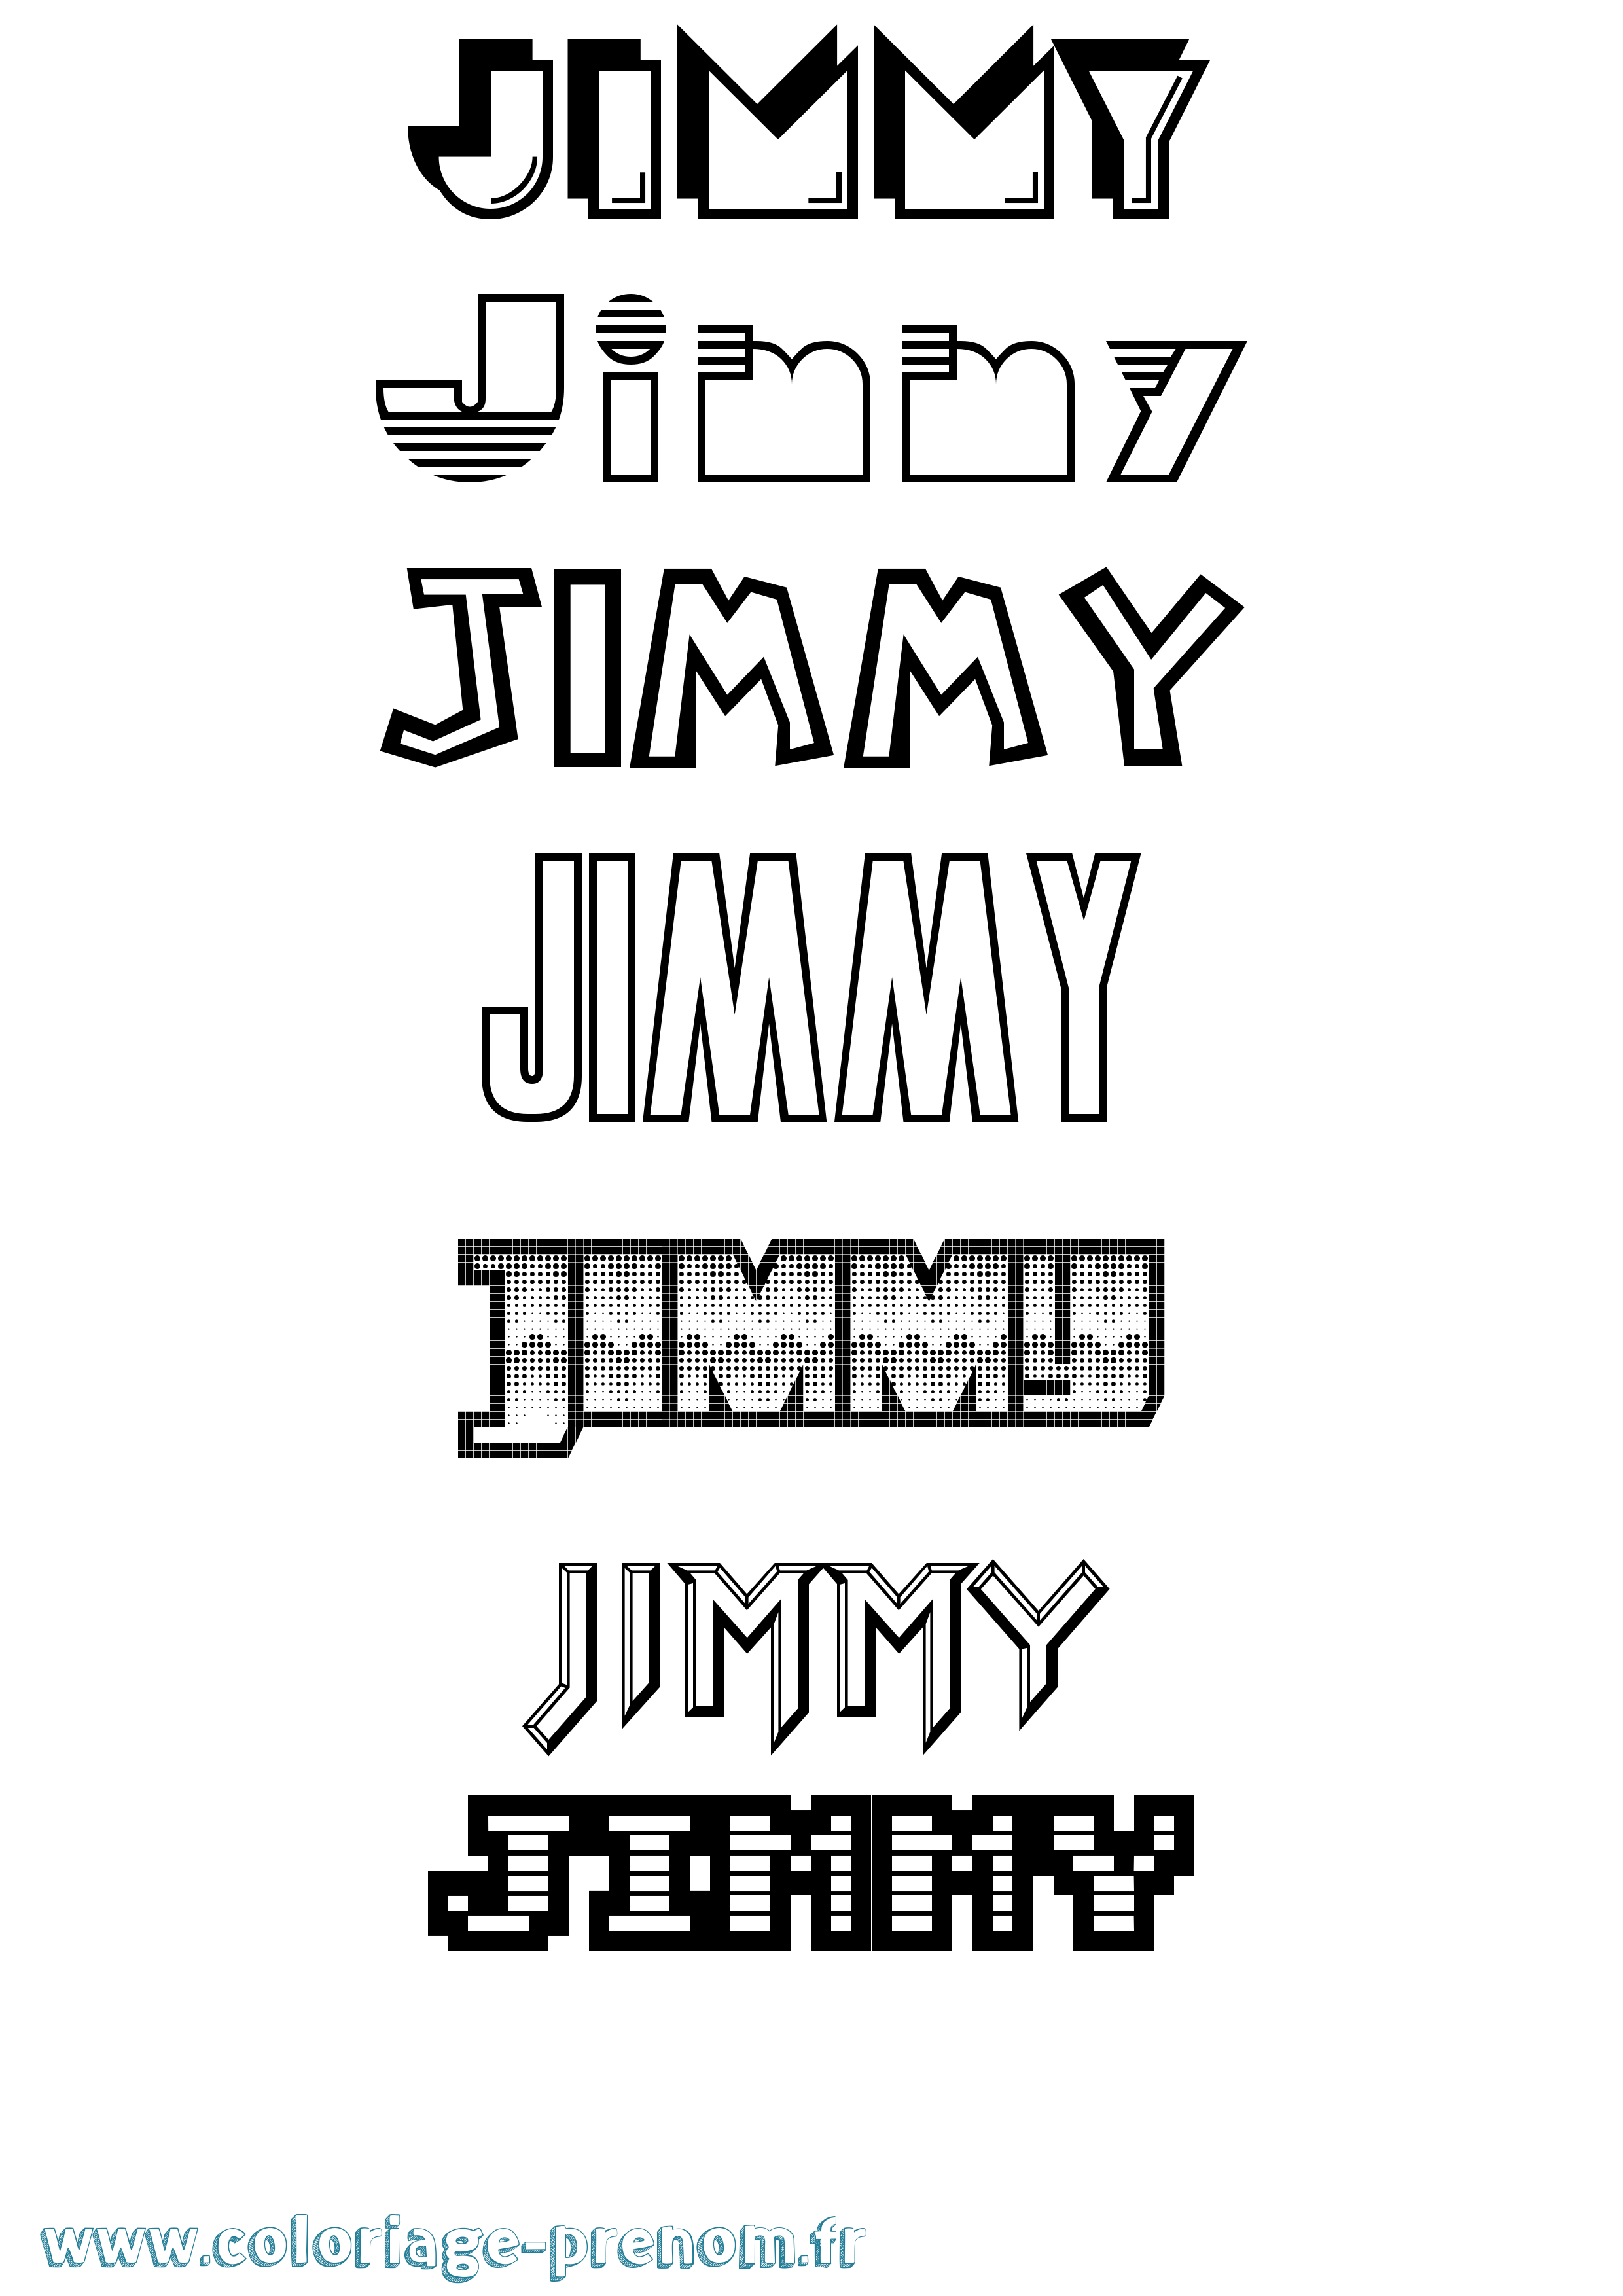 Coloriage prénom Jimmy Jeux Vidéos